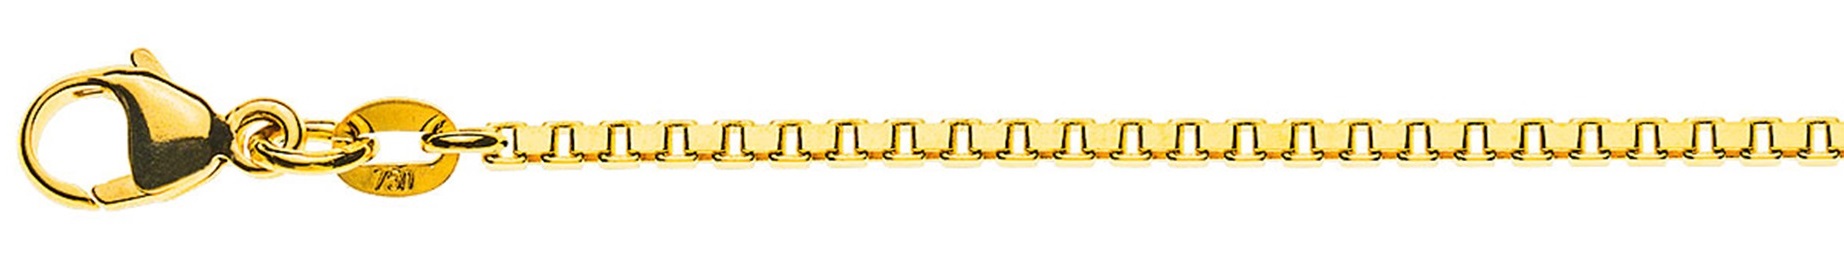 AURONOS Prestige Halskette Gelbgold 18K Venezianerkette diamantiert 55cm 1.6mm